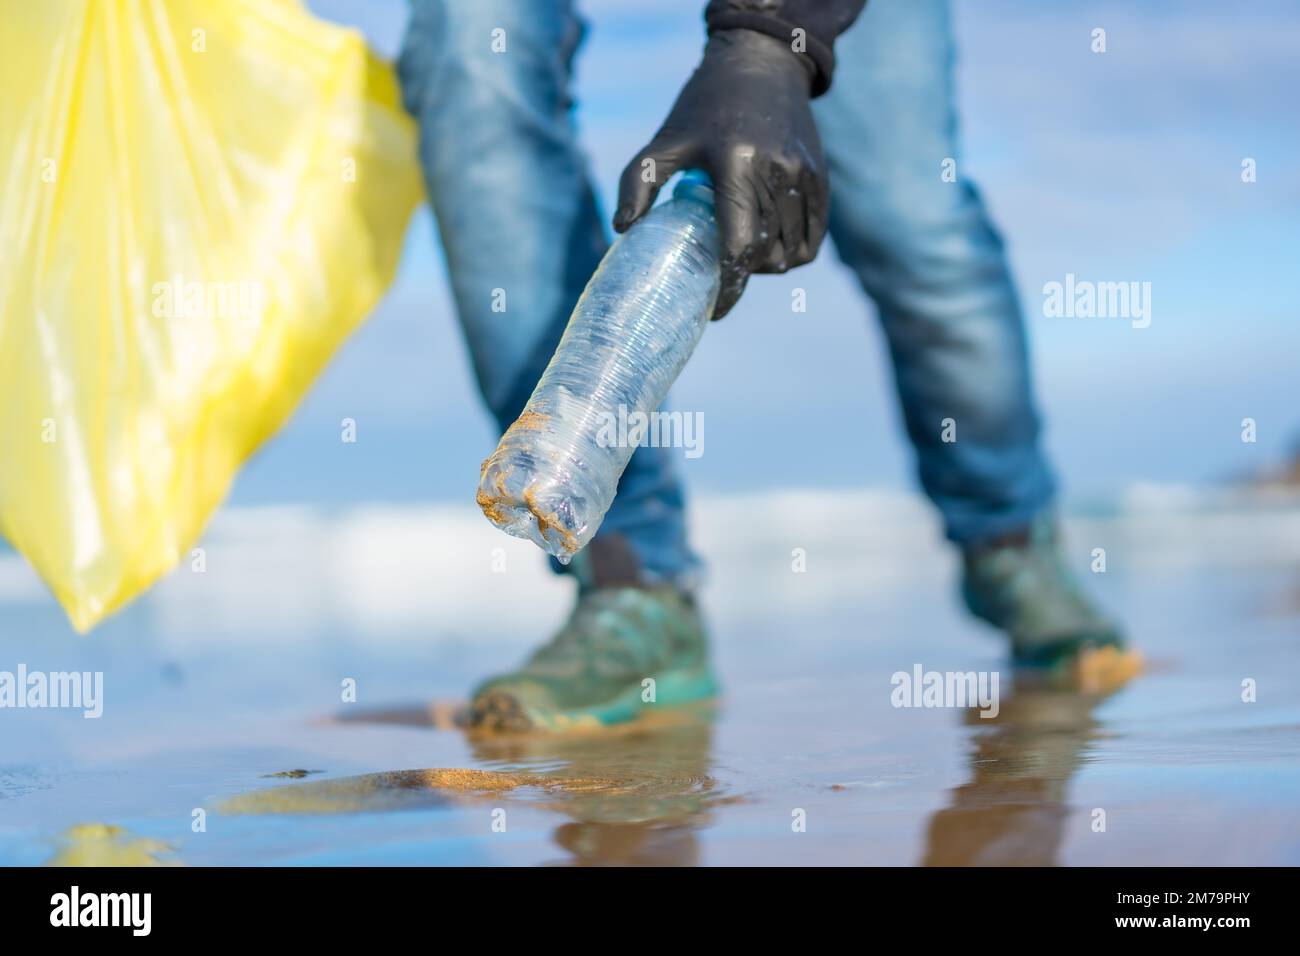 Meeresverschmutzung, nicht erkennbare Person, die Müll und Plastik am Strand sammelt. Ökologiekonzept Stockfoto